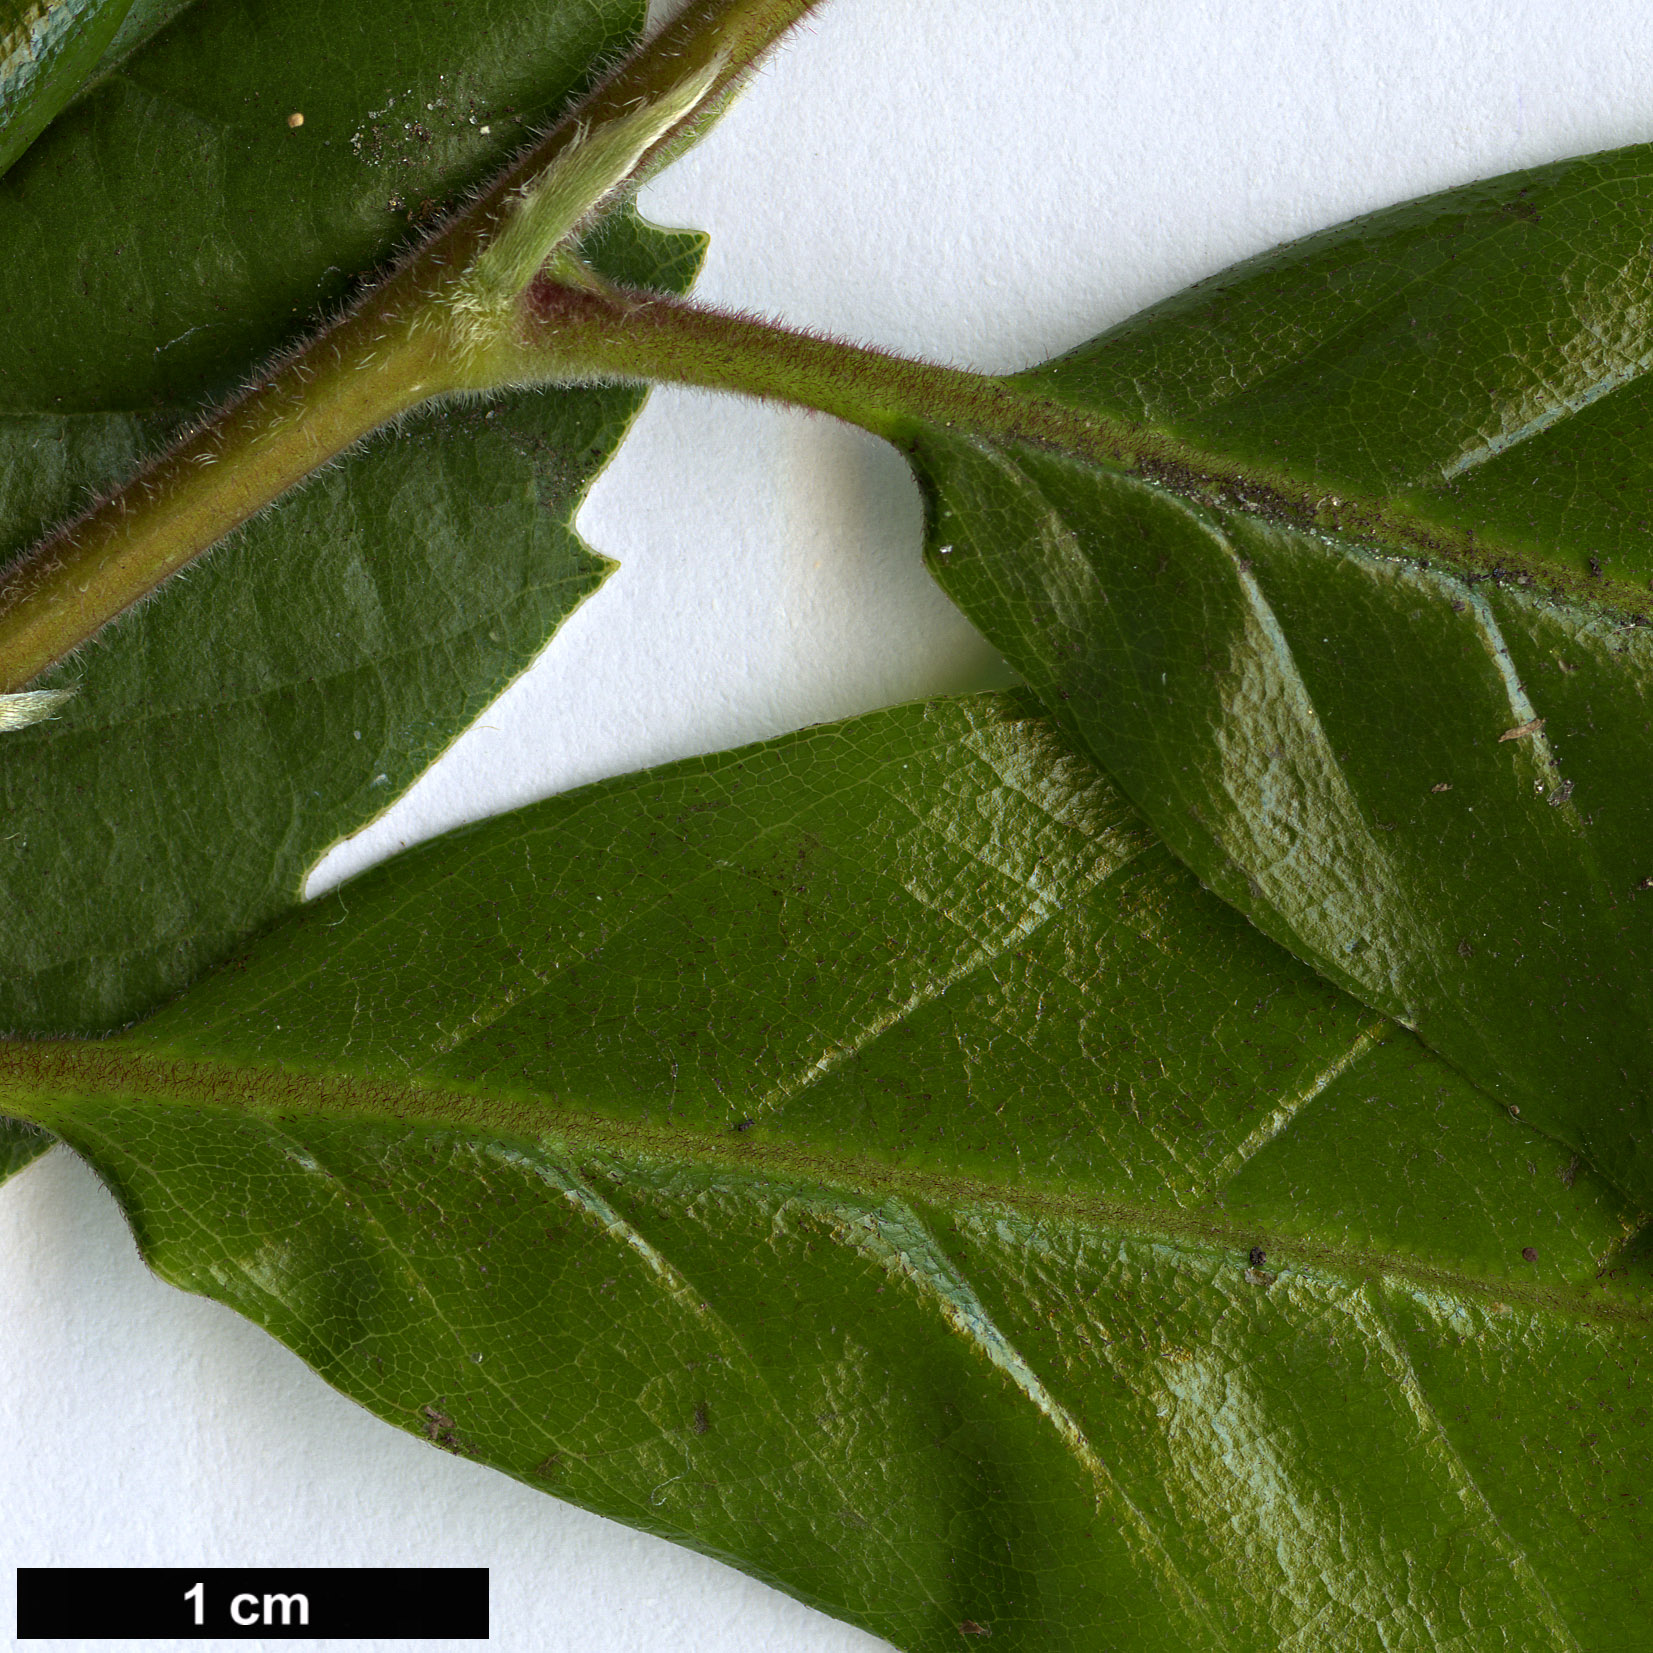 High resolution image: Family: Fagaceae - Genus: Lithocarpus - Taxon: quercifolius